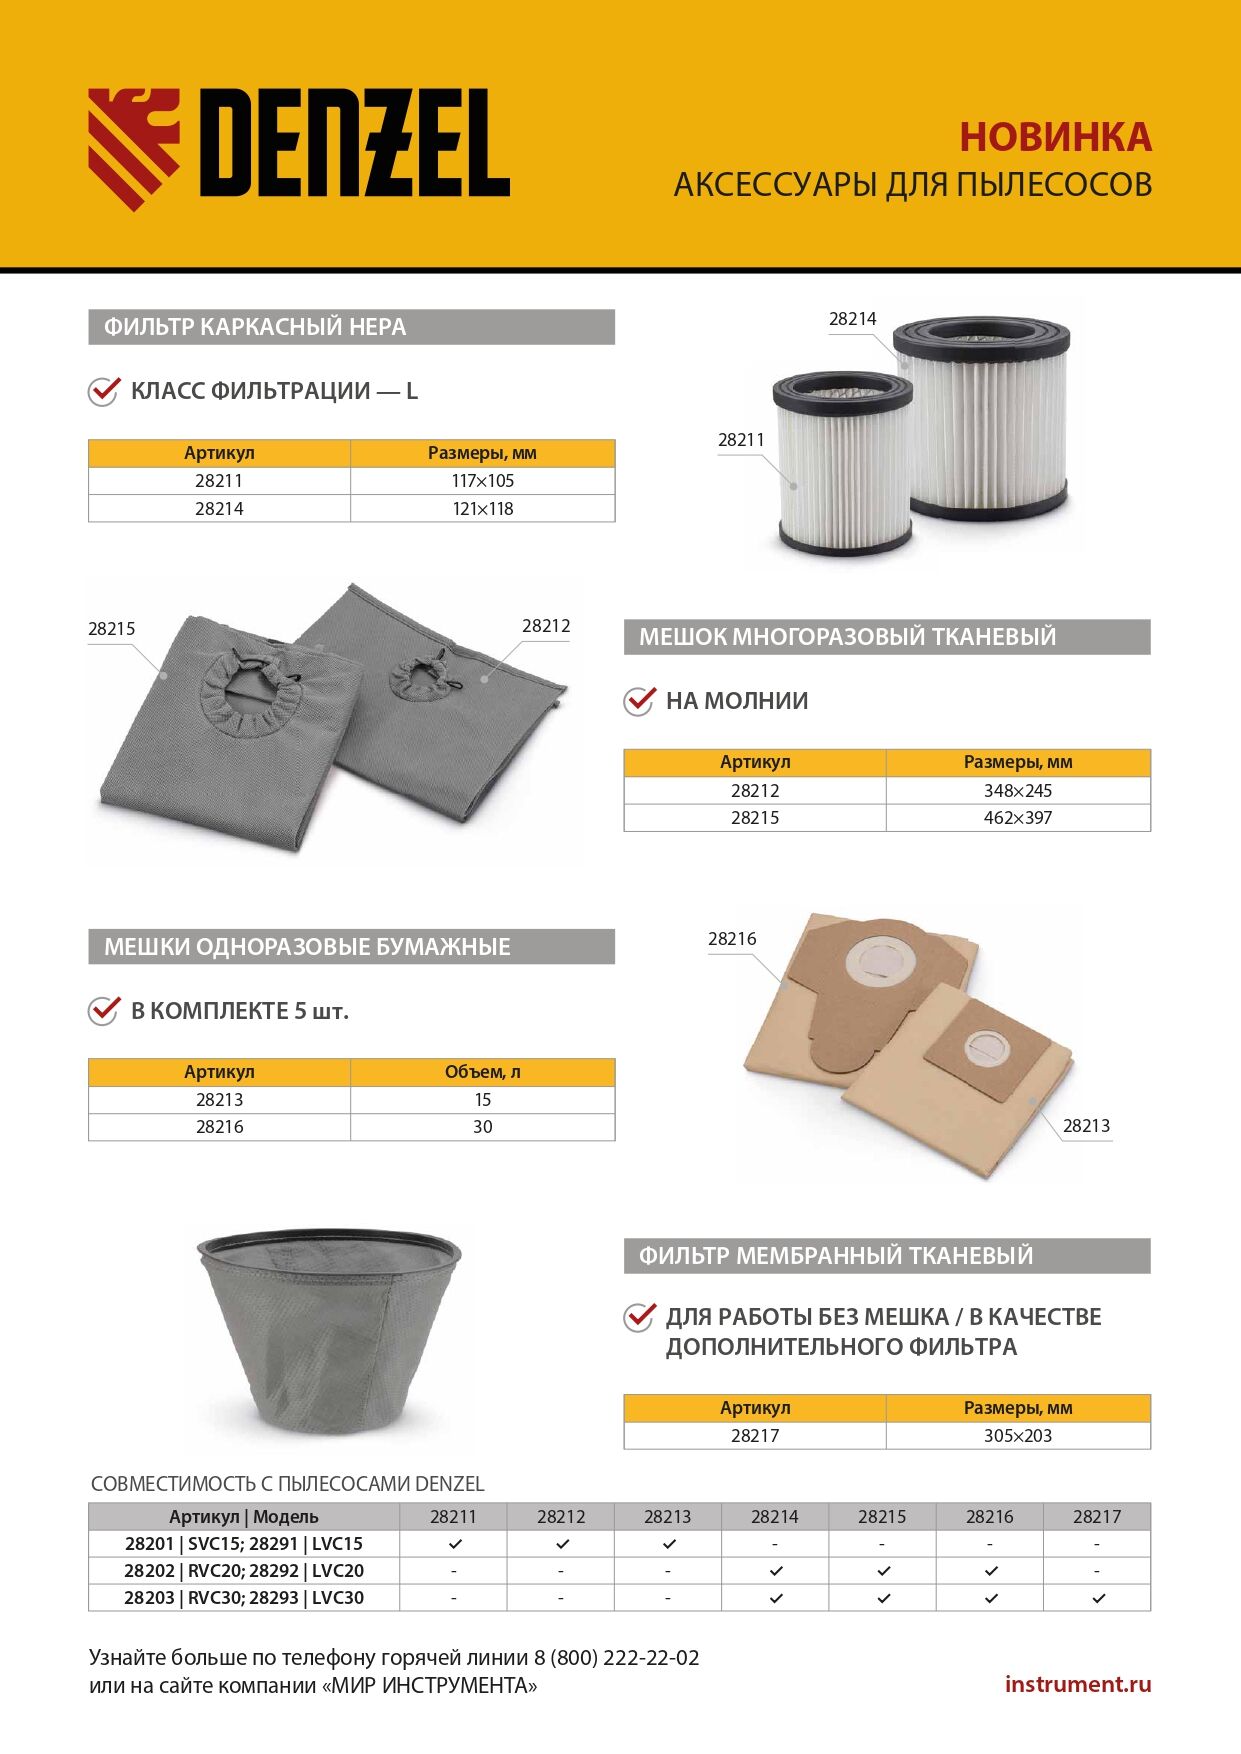 Фильтр каркасный-складчатый HEPA для пылесосов Denzel RVC20, RVC30, LVC20, LVC30// Denzel 7